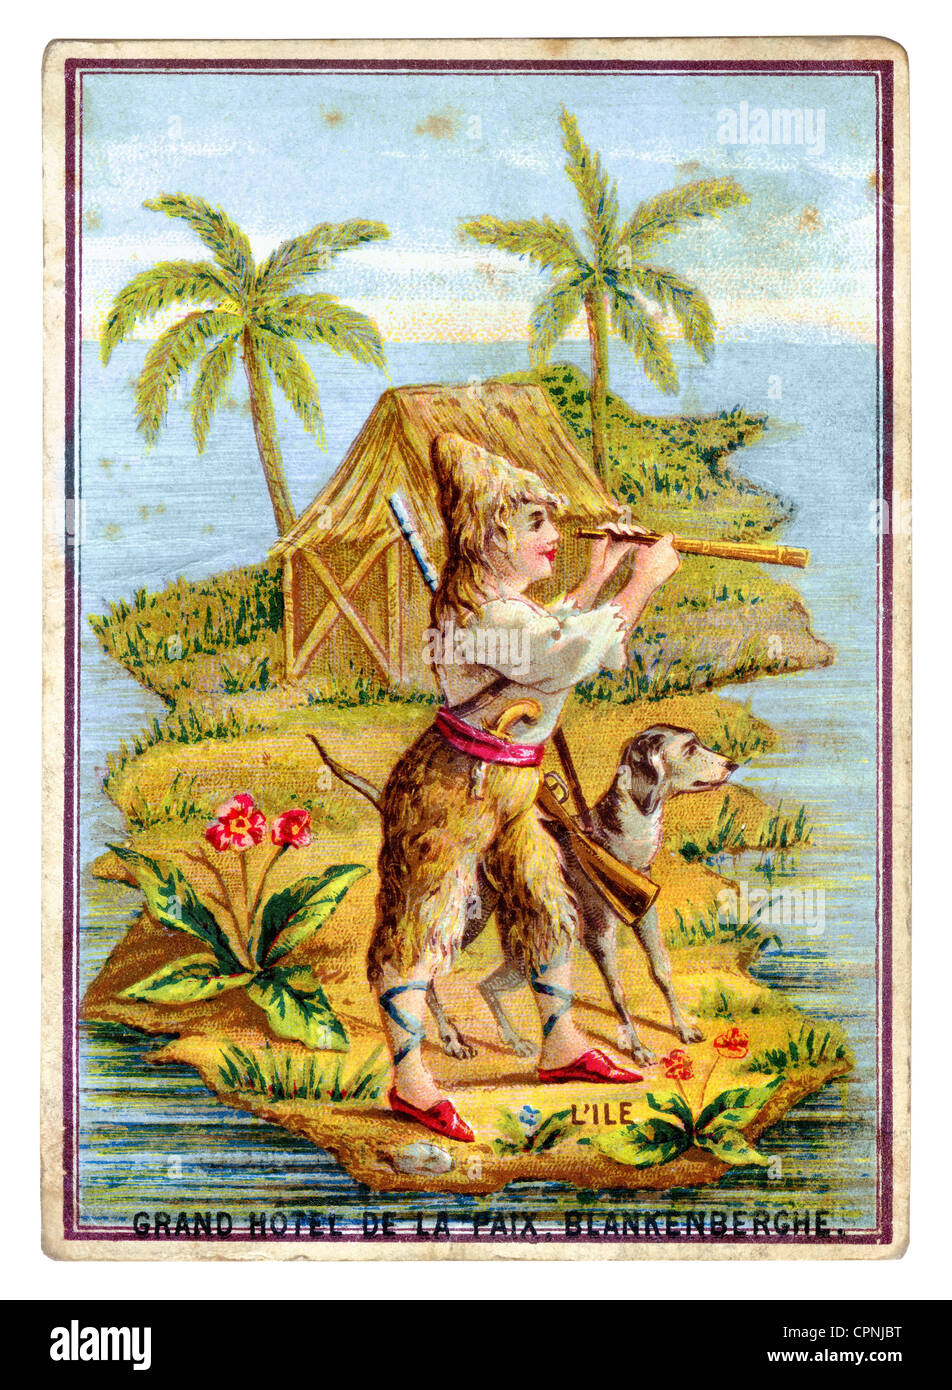 Defoe, Daniel, circa 1660 - 26.4.1731, autore/scrittore britannico, oevre, 'Robinson Crusoe', immagine pubblicitaria dell'ex Grand Hotel de la Paix, Blankenberghe, litografia, Belgio, circa 1875, Foto Stock